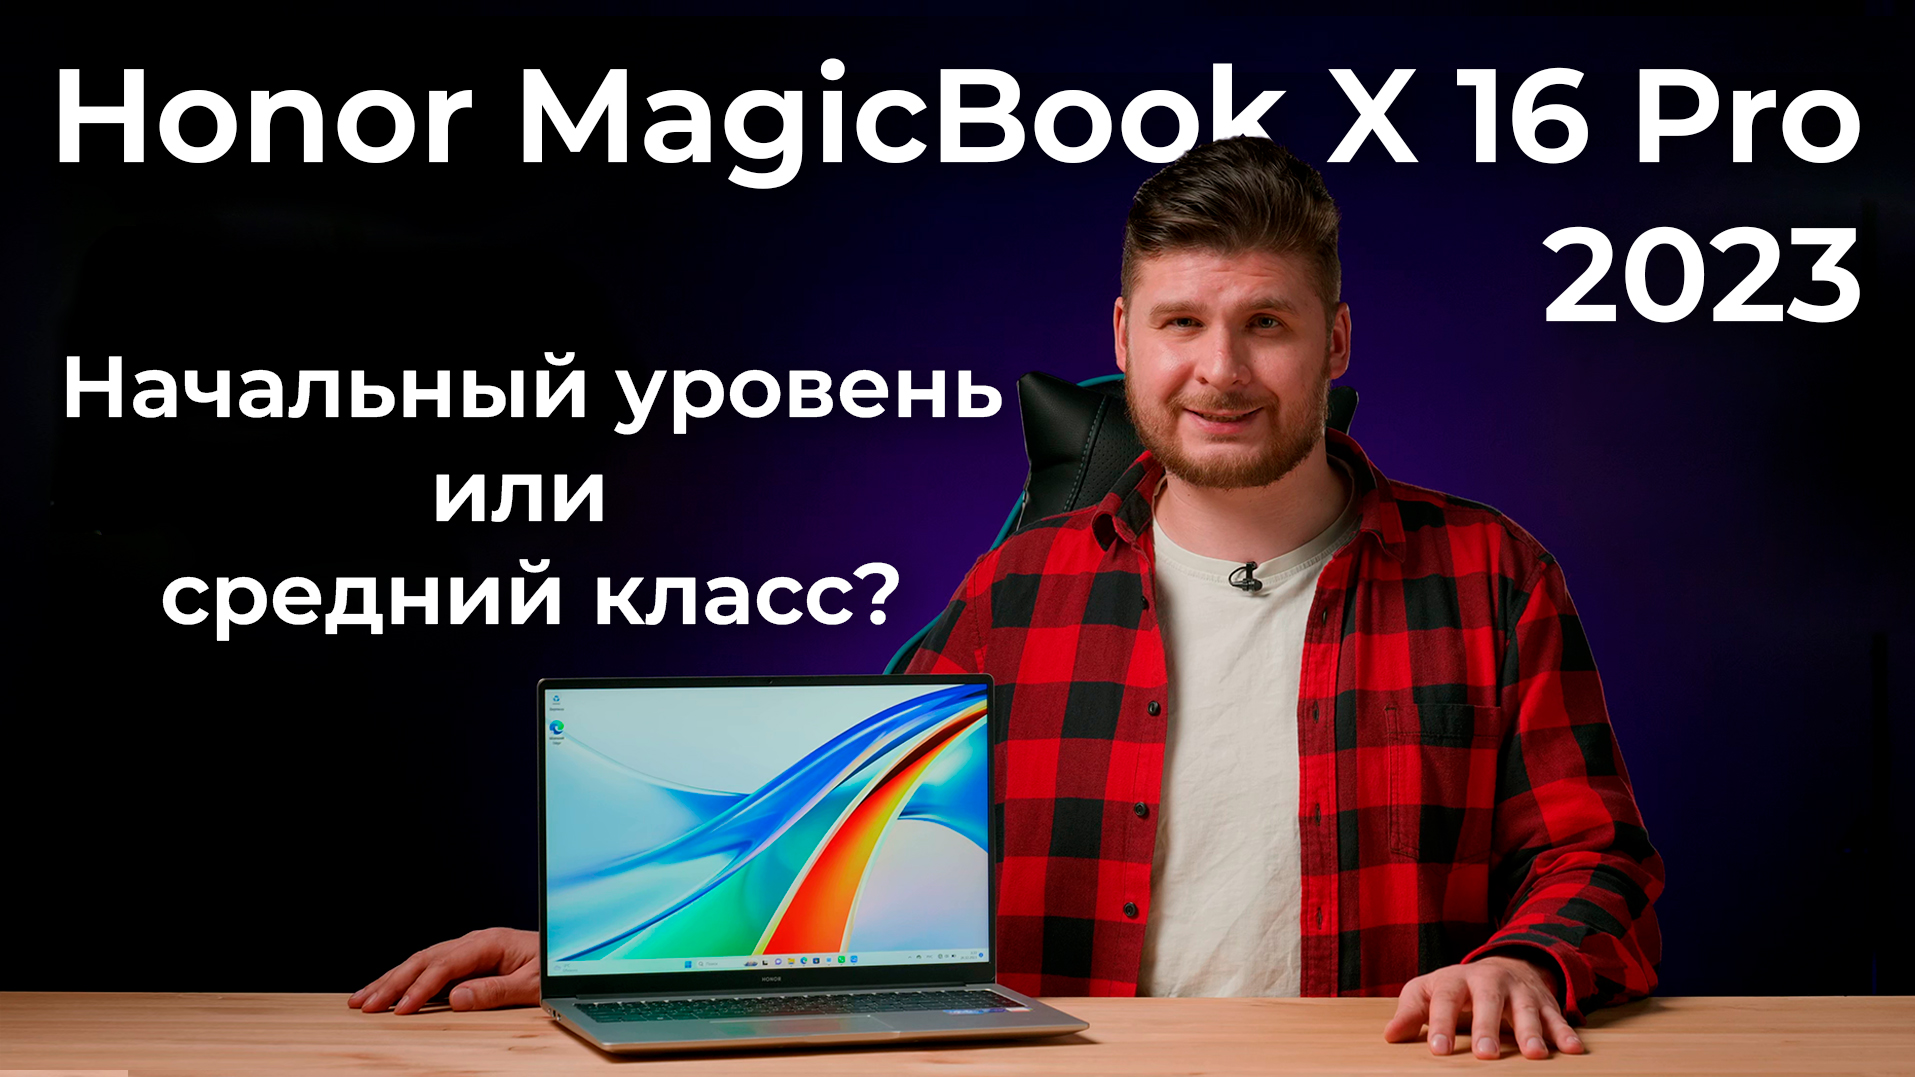 Обзор ноутбука Honor MagicBook X 16 Pro 2023